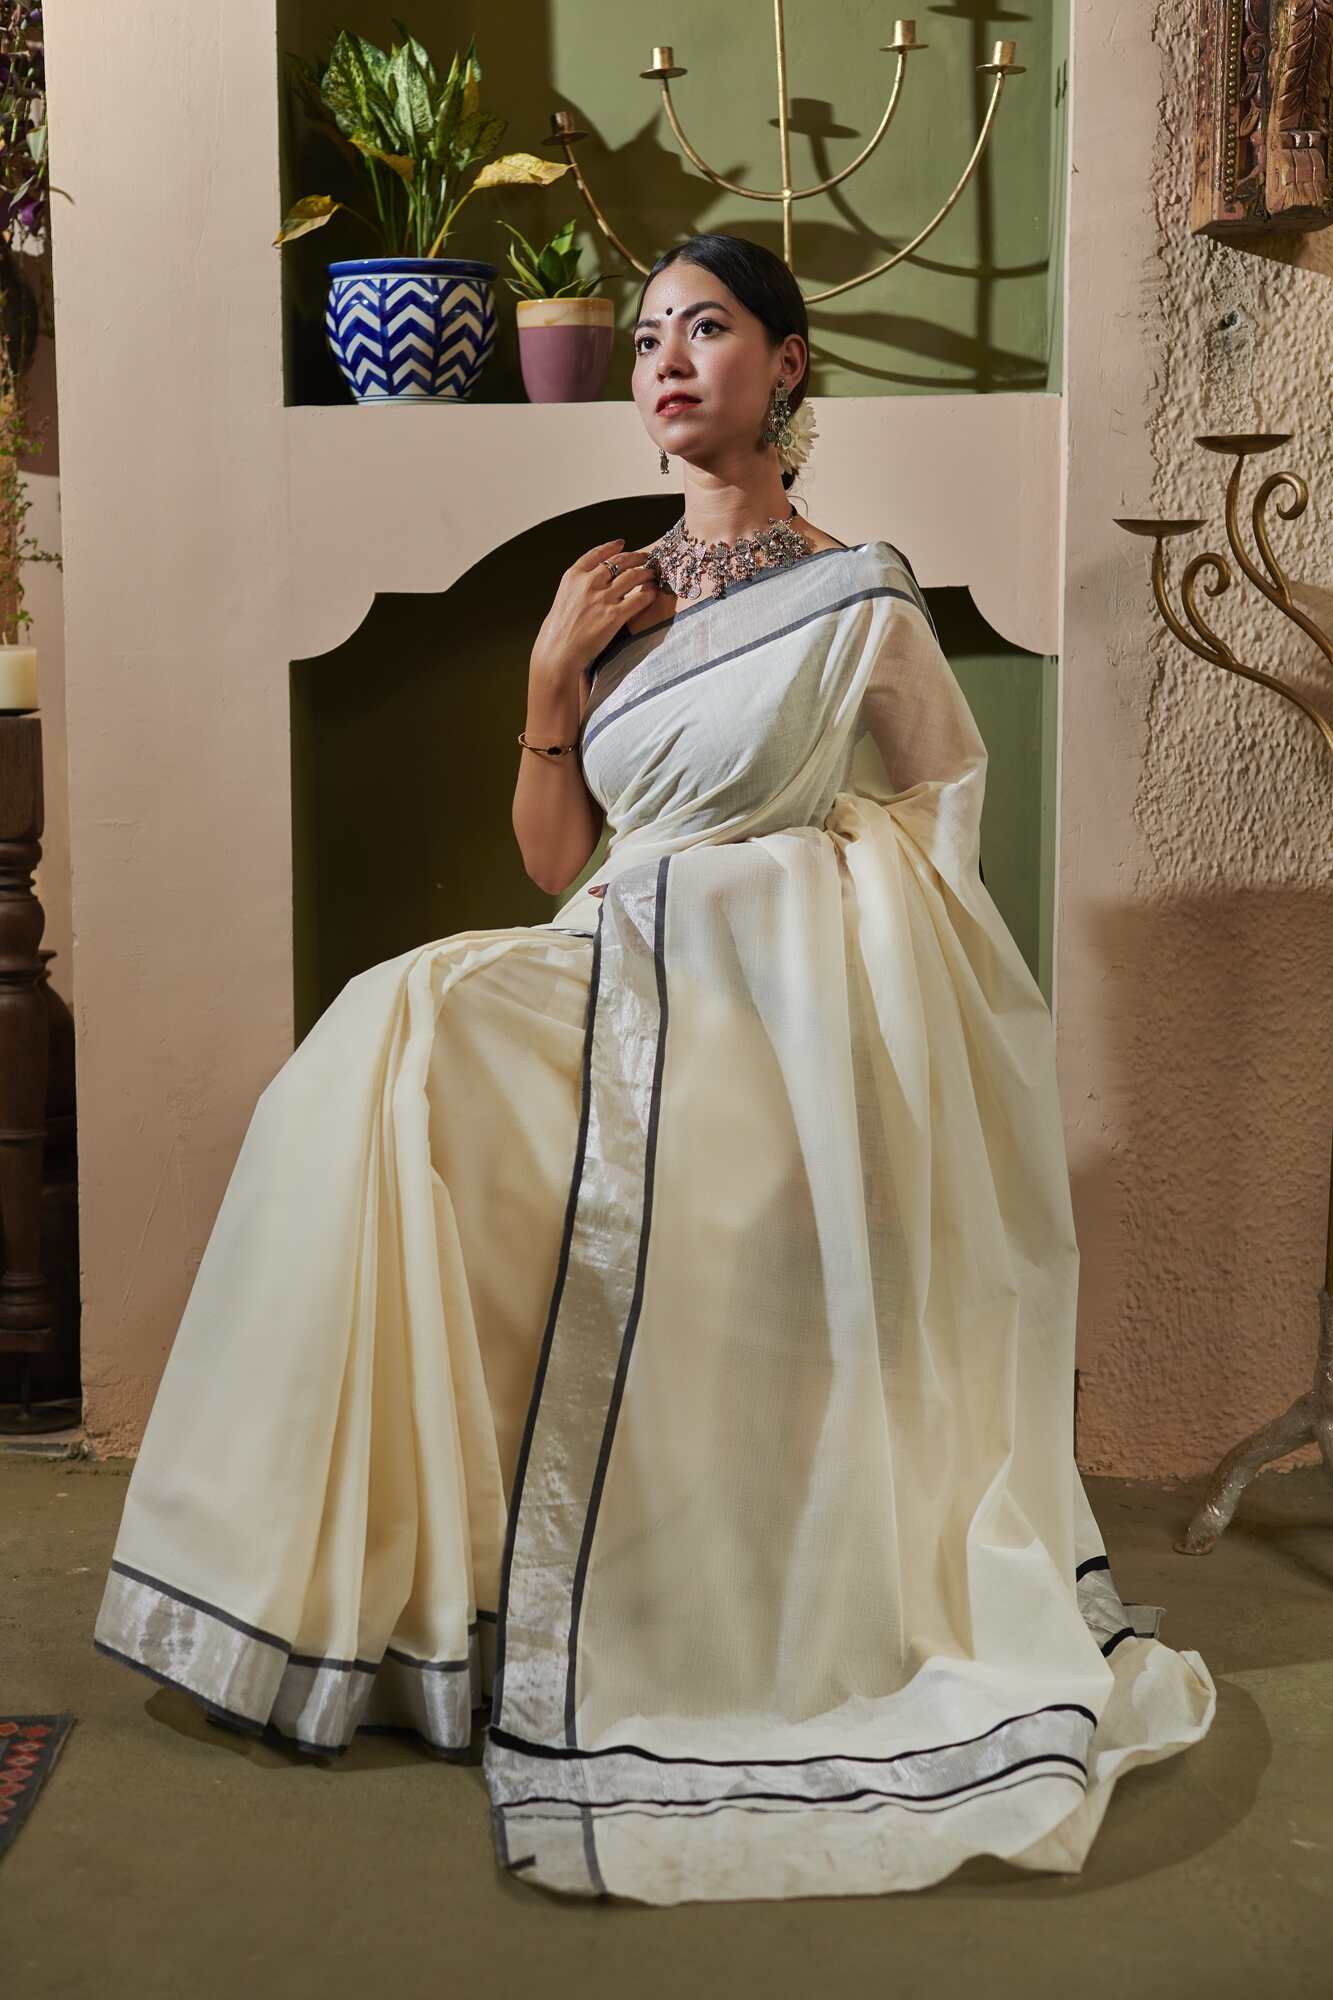 Amazon.com: Women's Kuthampully Kerala Kasavu Saree Golden Tissue Plain  Handloom : Clothing, Shoes & Jewelry